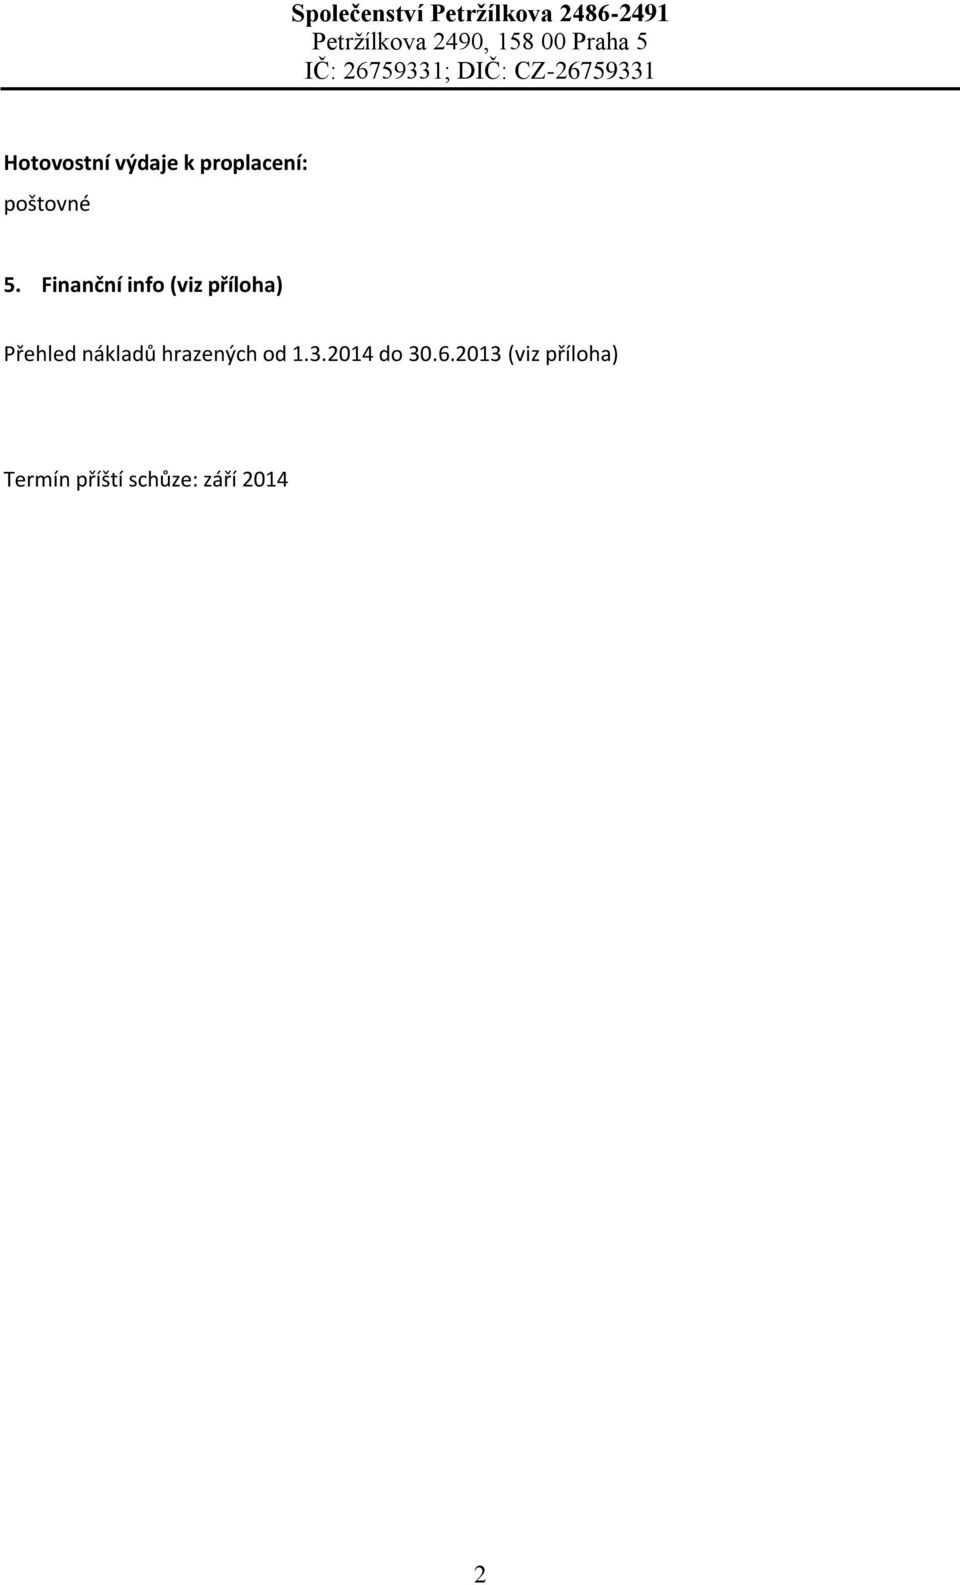 nákladů hrazených od 1.3.2014 do 30.6.